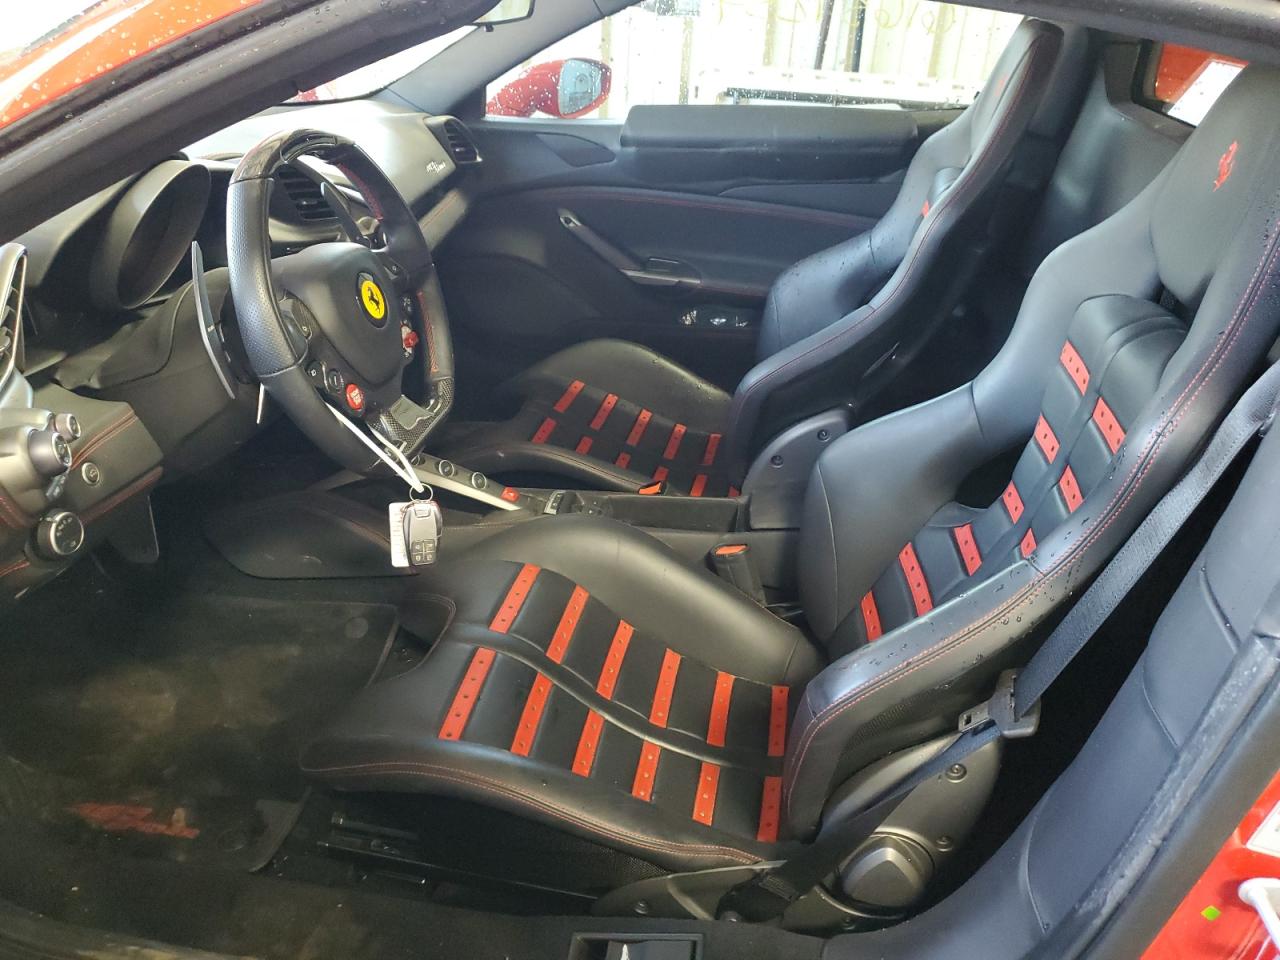 2018 Ferrari 488 Spider VIN: ZFF80AMA4J0235046 Lot: 61637254